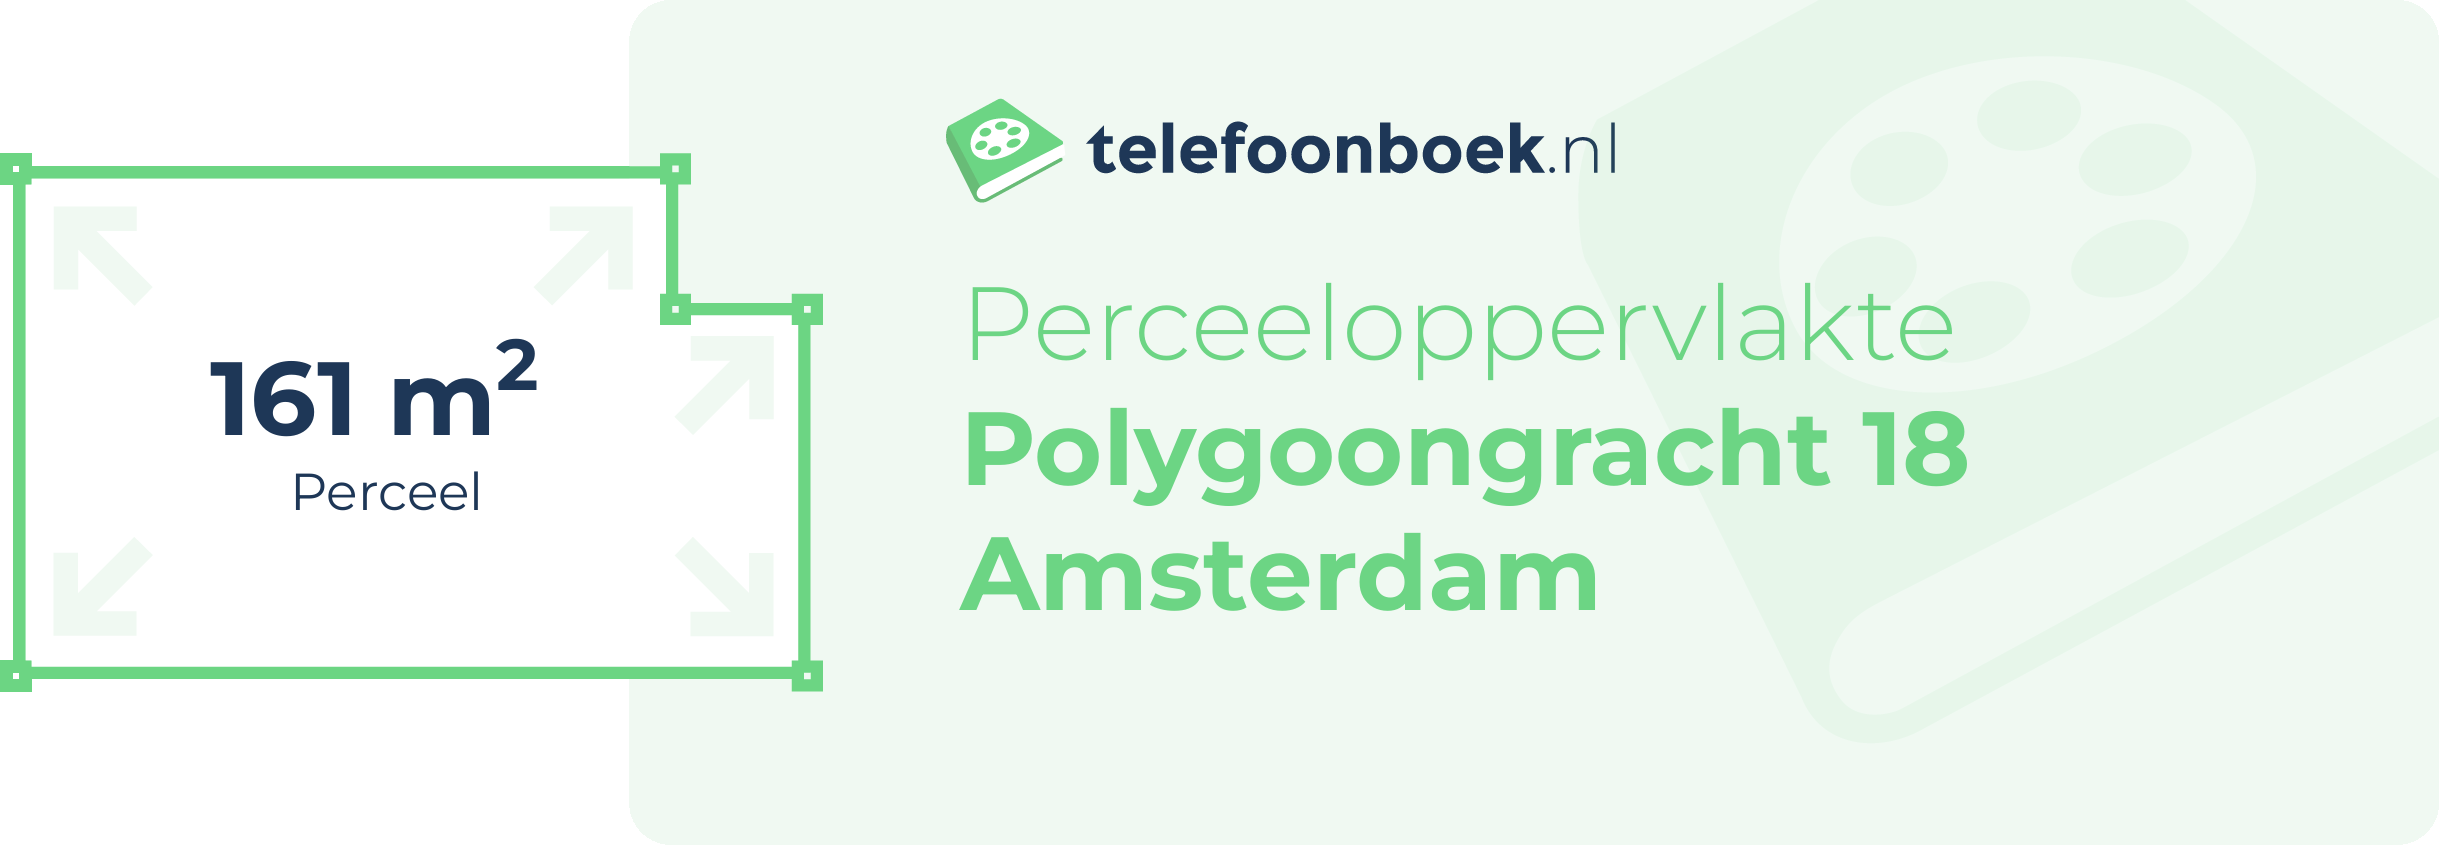 Perceeloppervlakte Polygoongracht 18 Amsterdam